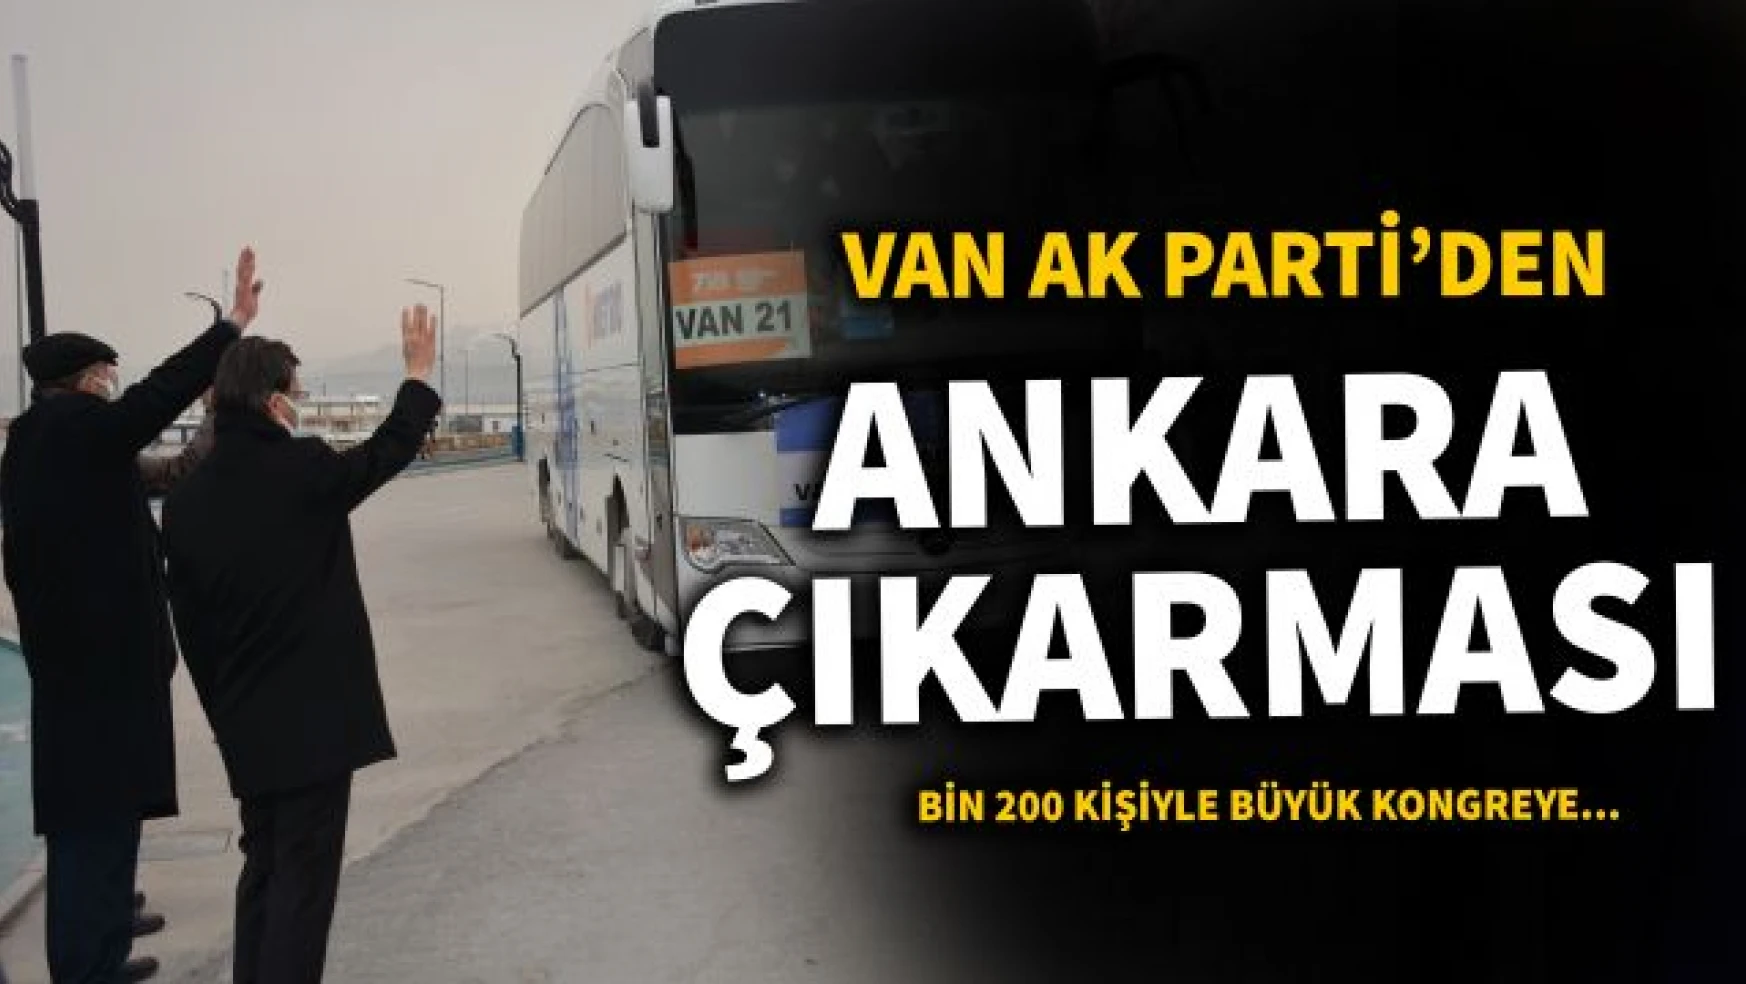 Van AK Parti Büyük Kongre için Ankara'ya doğru yola çıktı